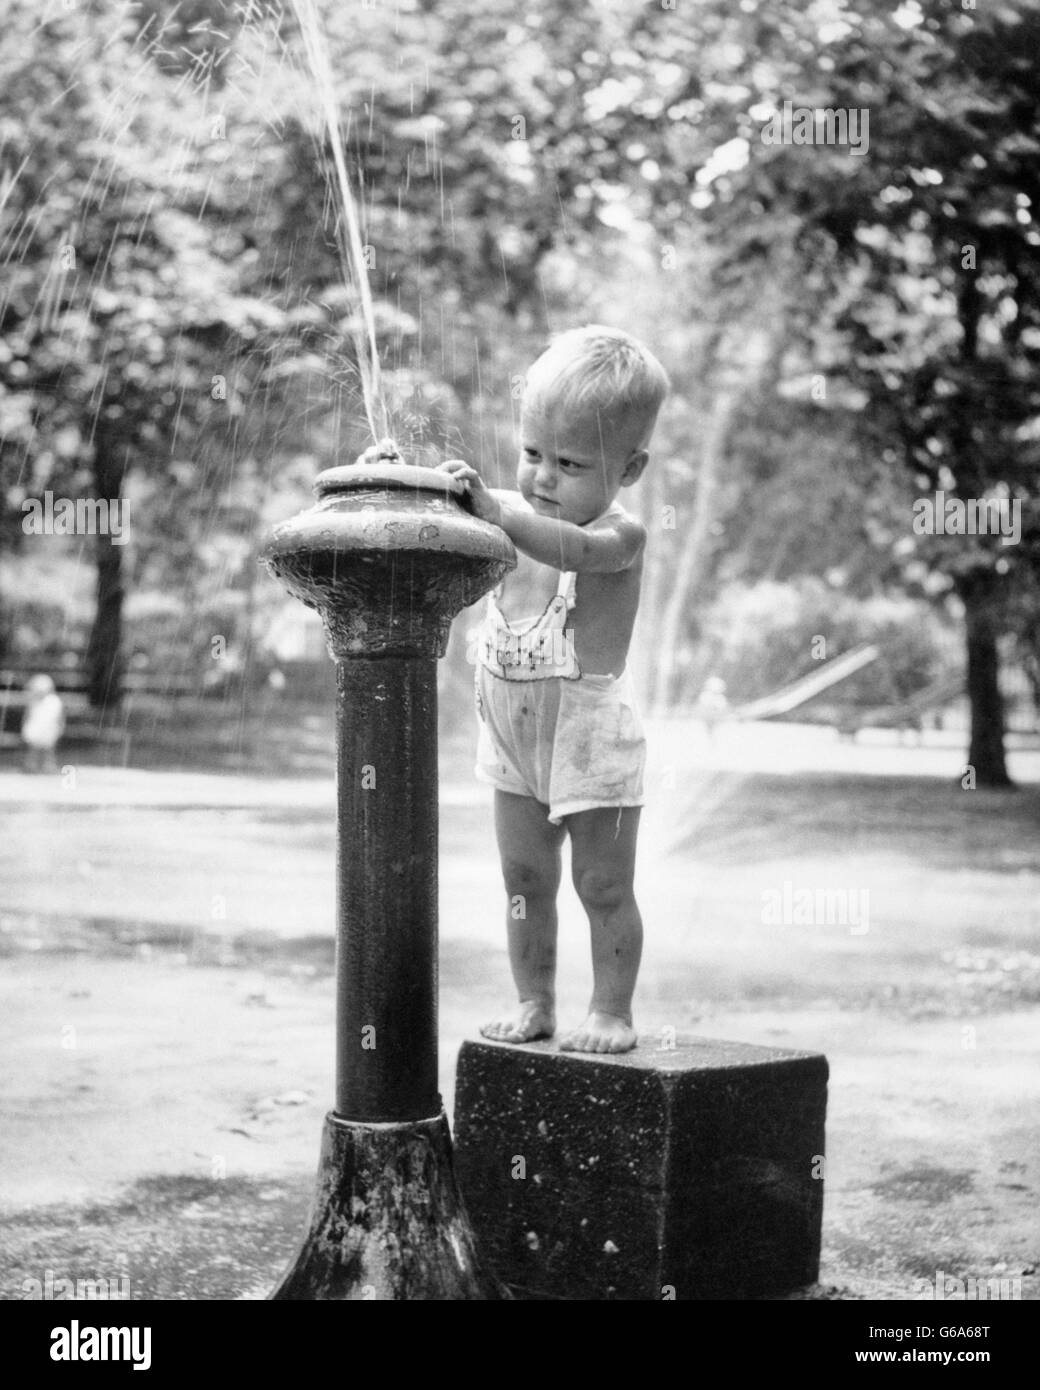 1950 Petit Garçon jouant dans l'eau Fontaine d'EAU POTABLE CENTRAL PARK NEW YORK USA Banque D'Images